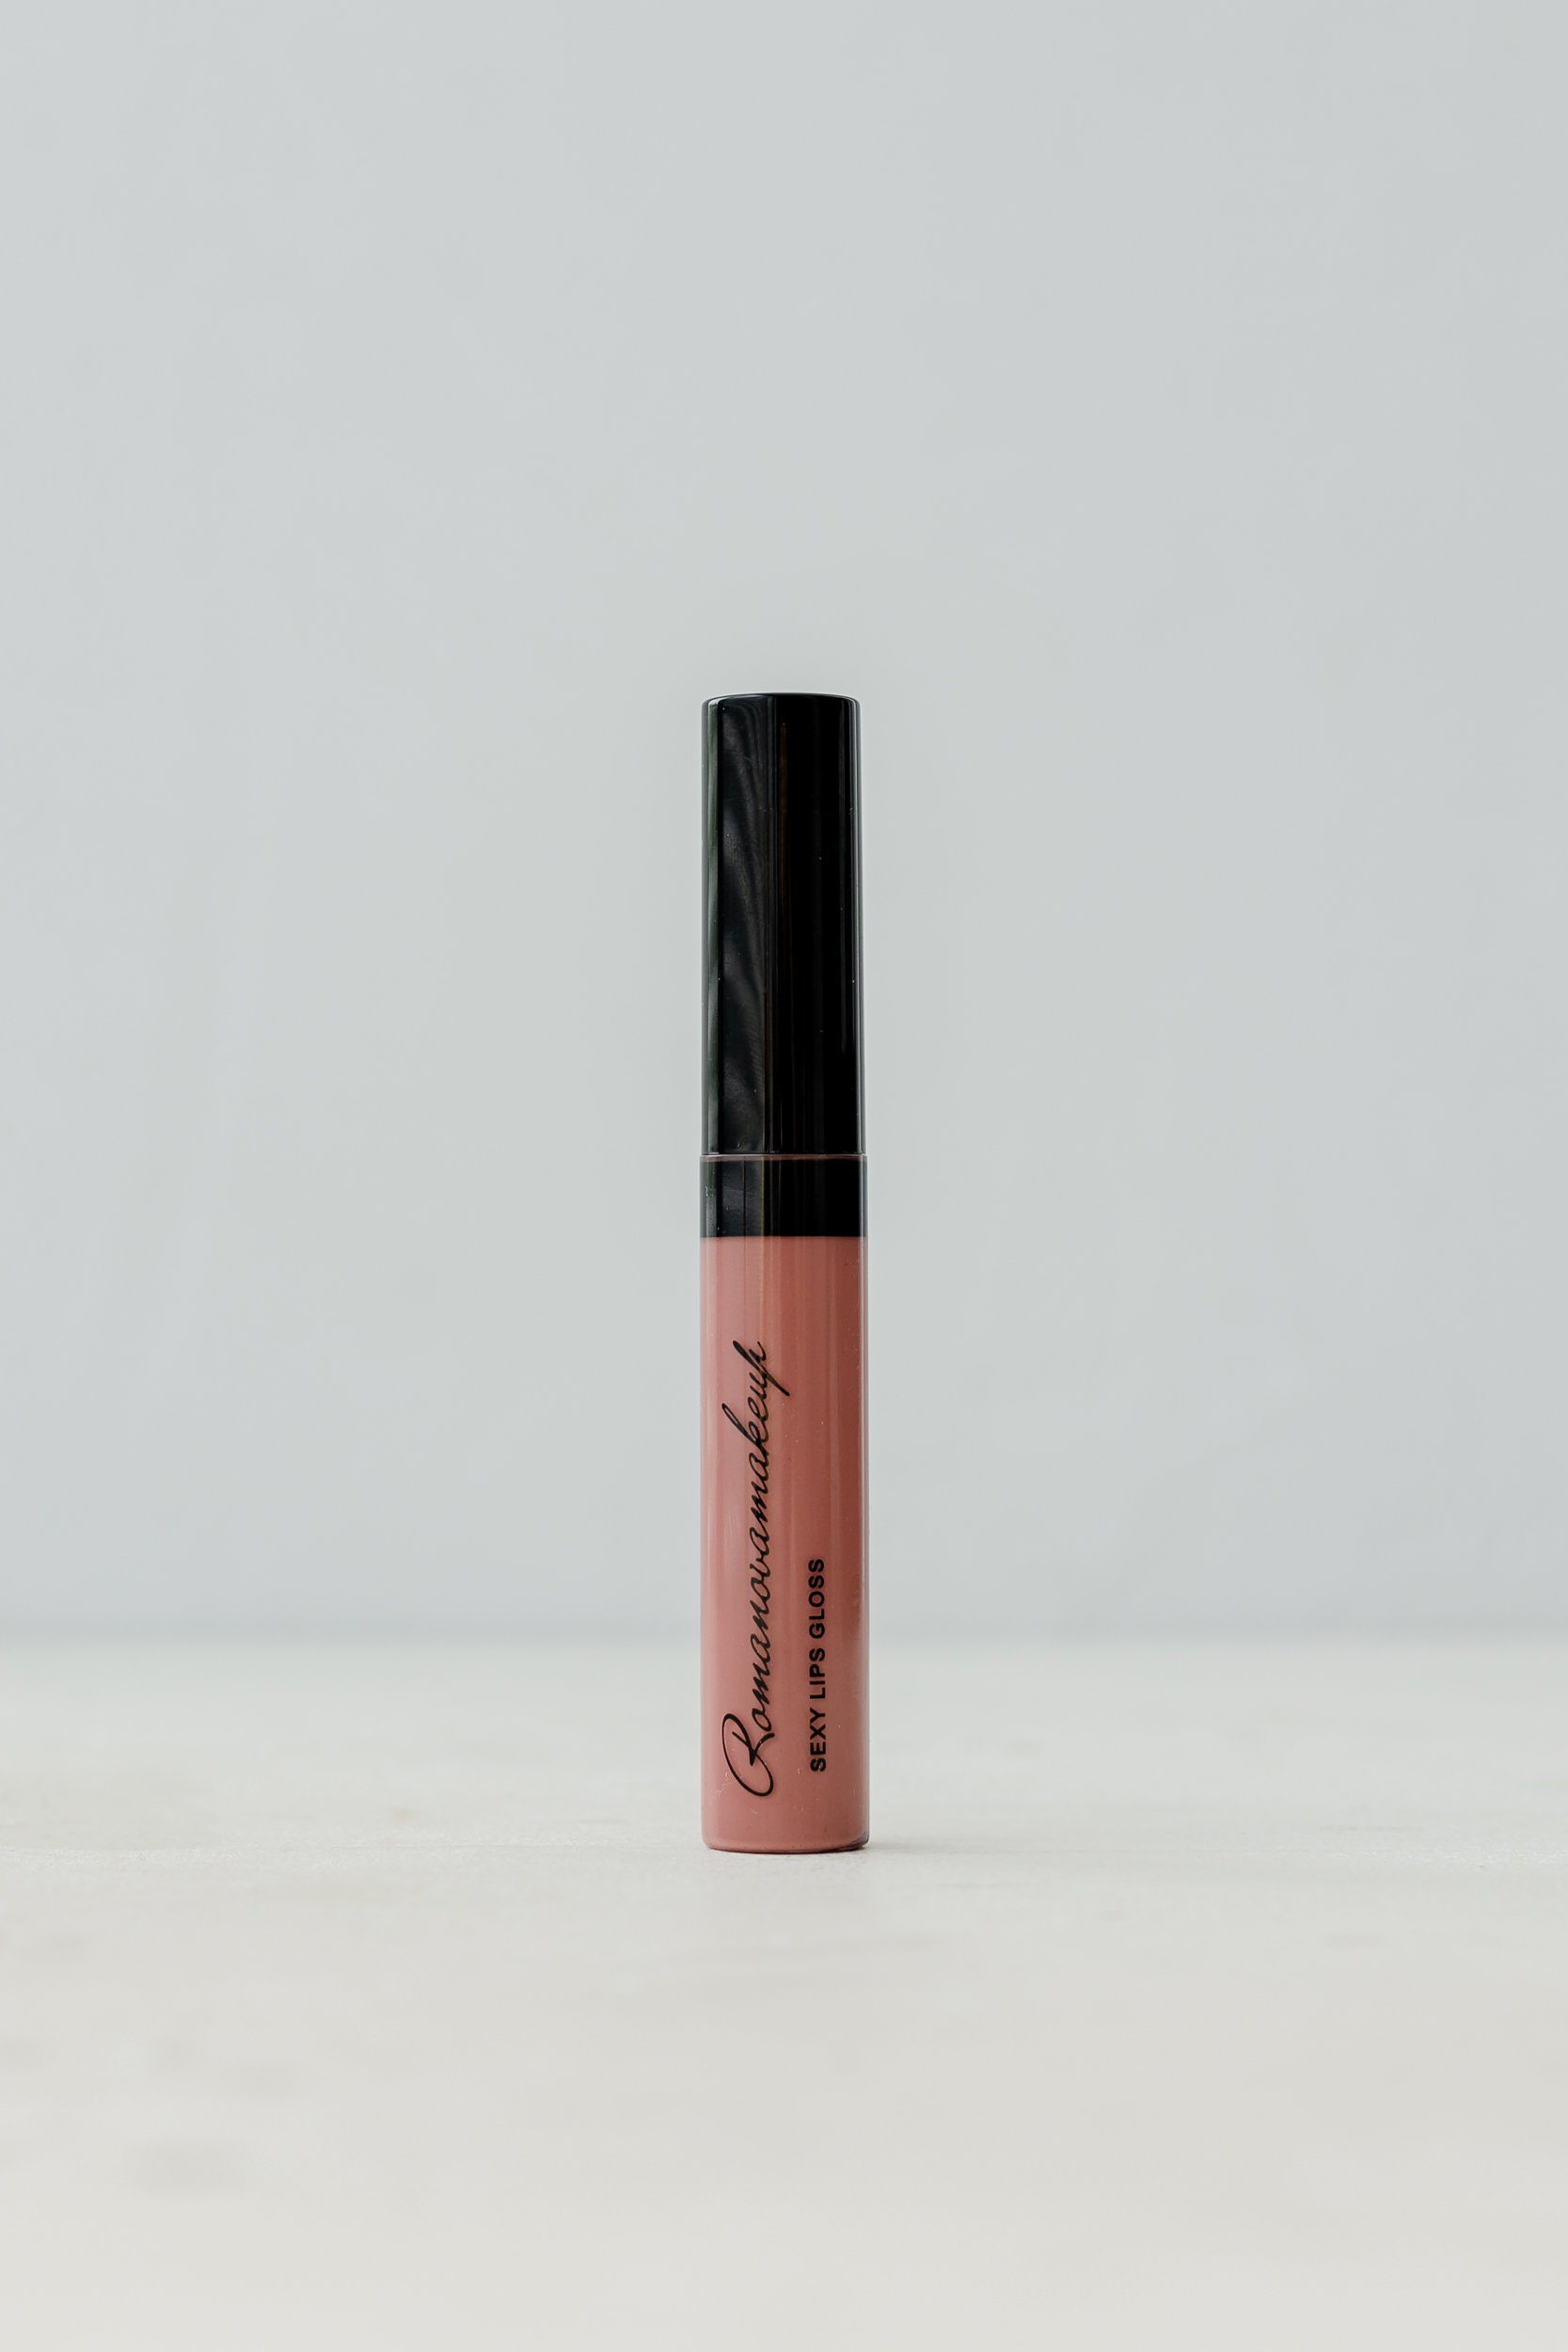 Роскошный блеск для губ, который и правда секси Romanovamakeup Sexy Lips Gloss DRAMATIC 8.5ml